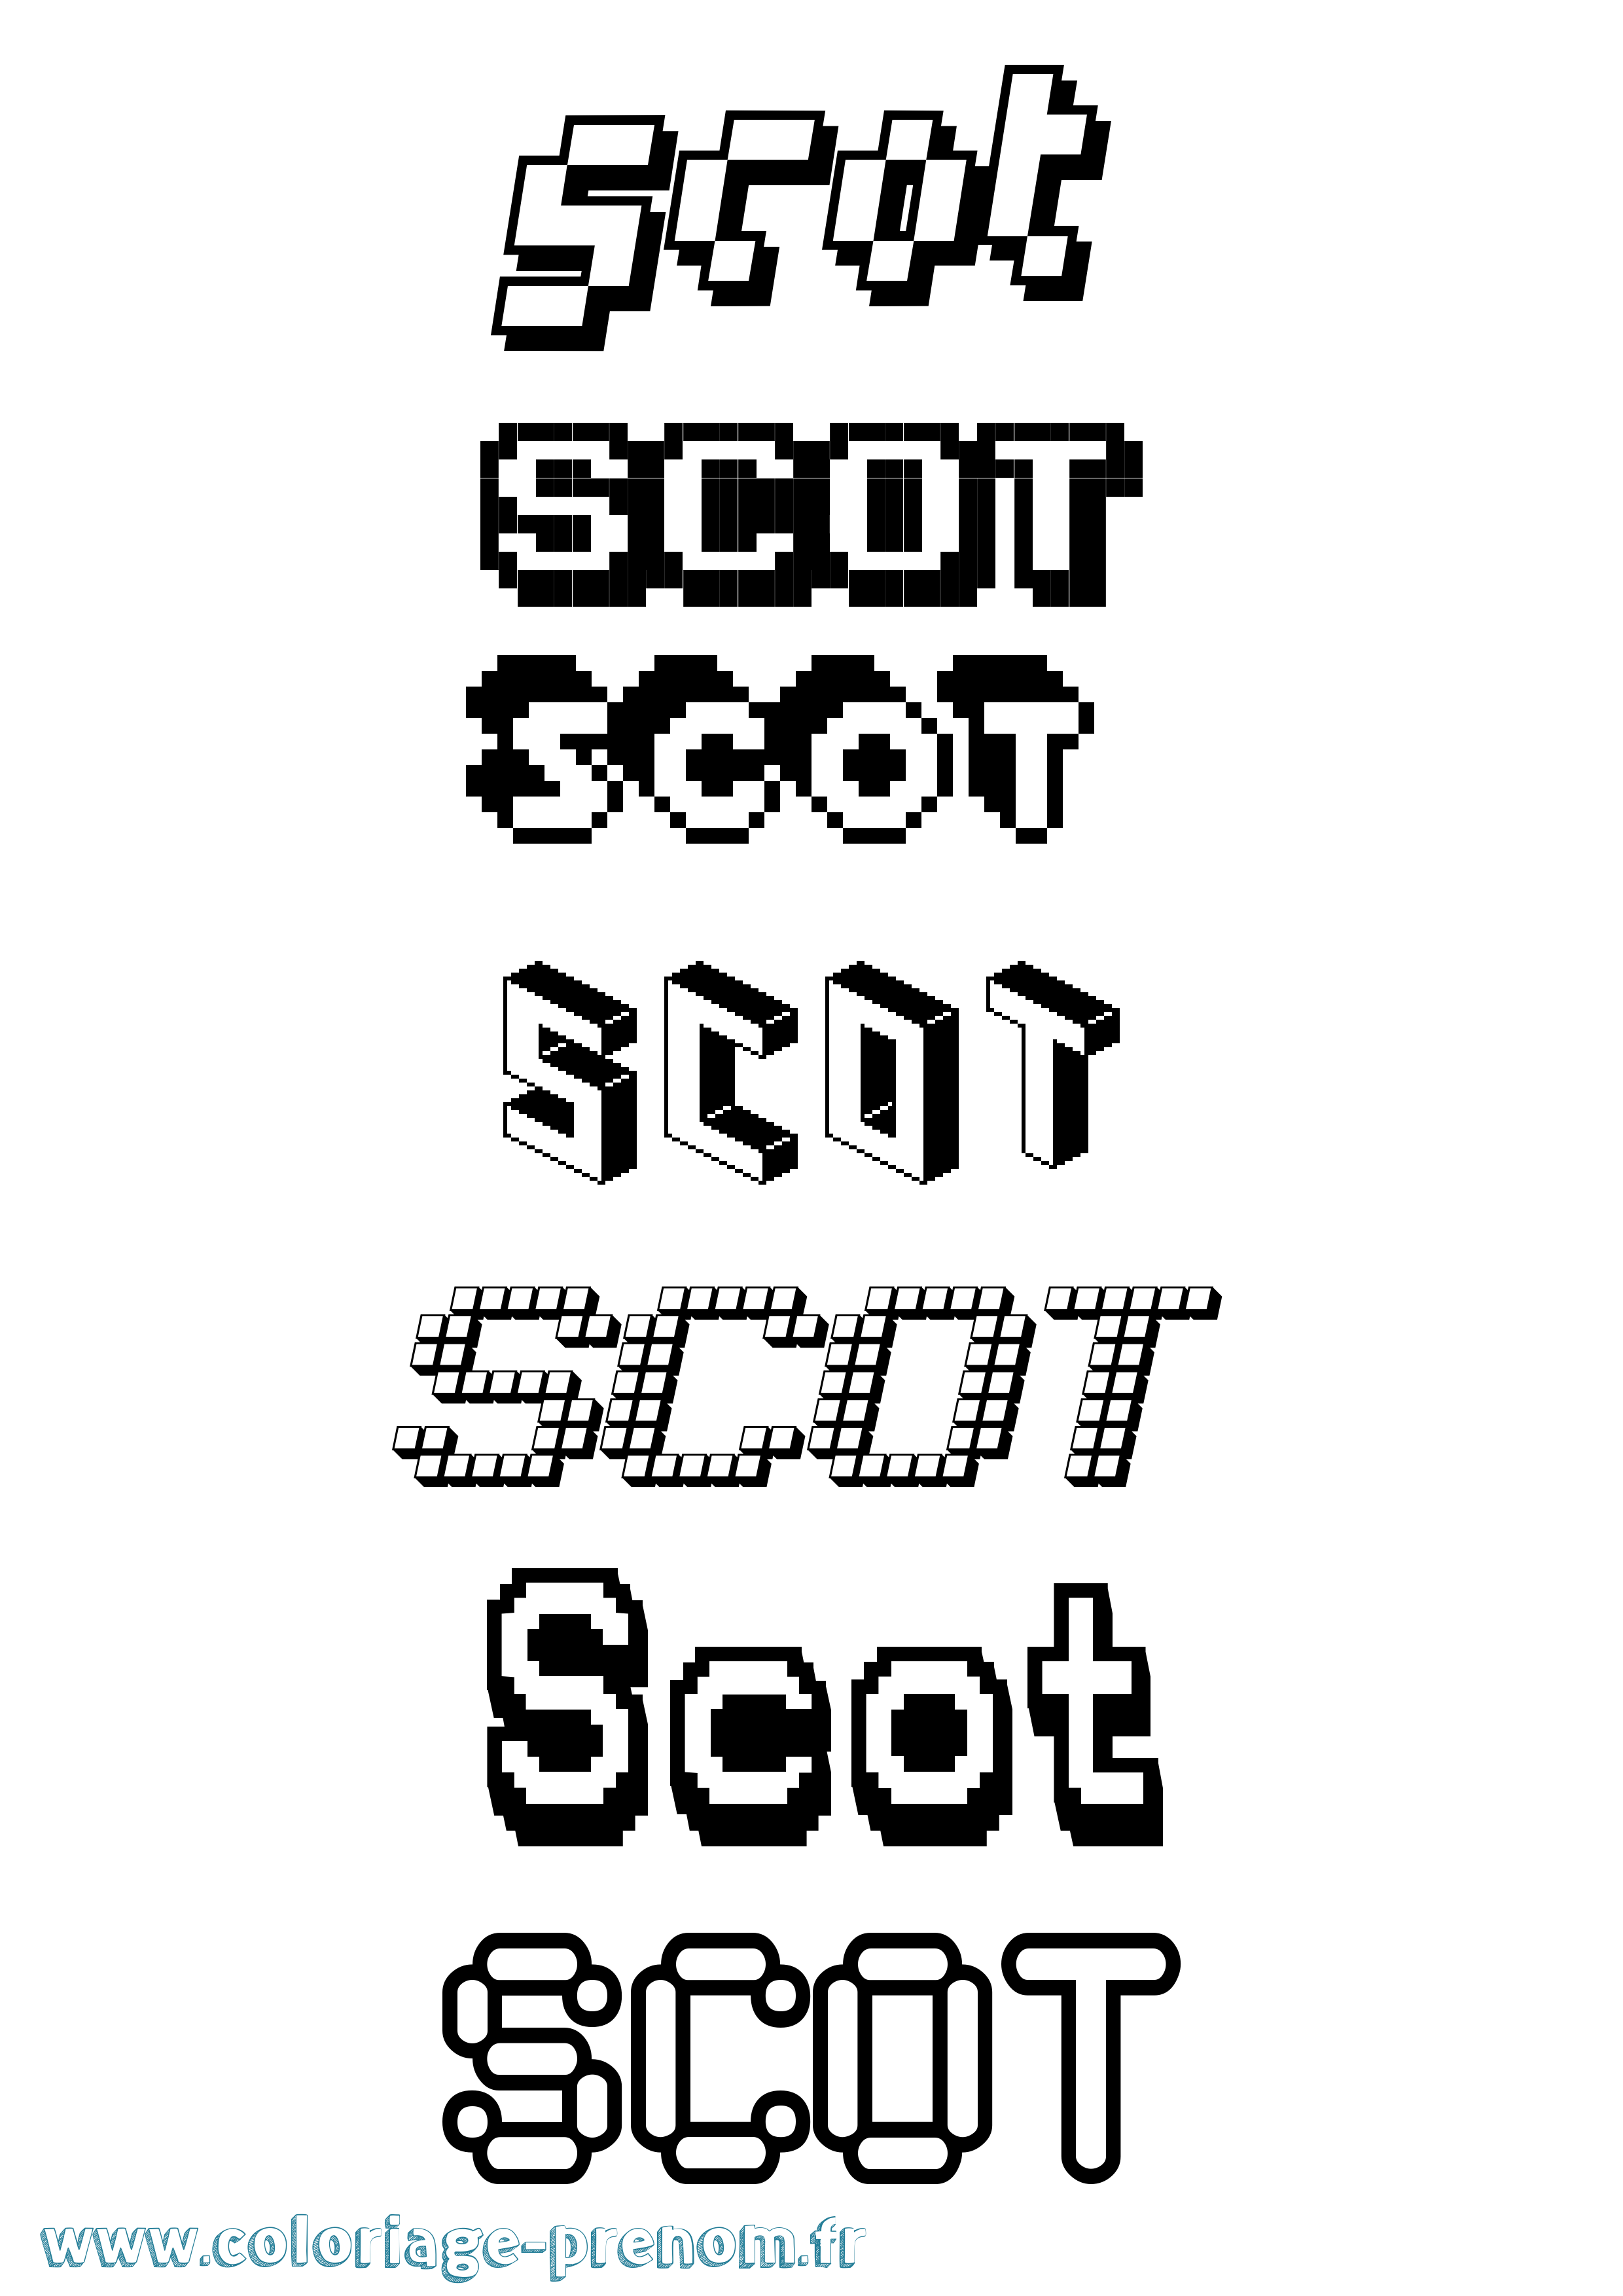 Coloriage prénom Scot Pixel